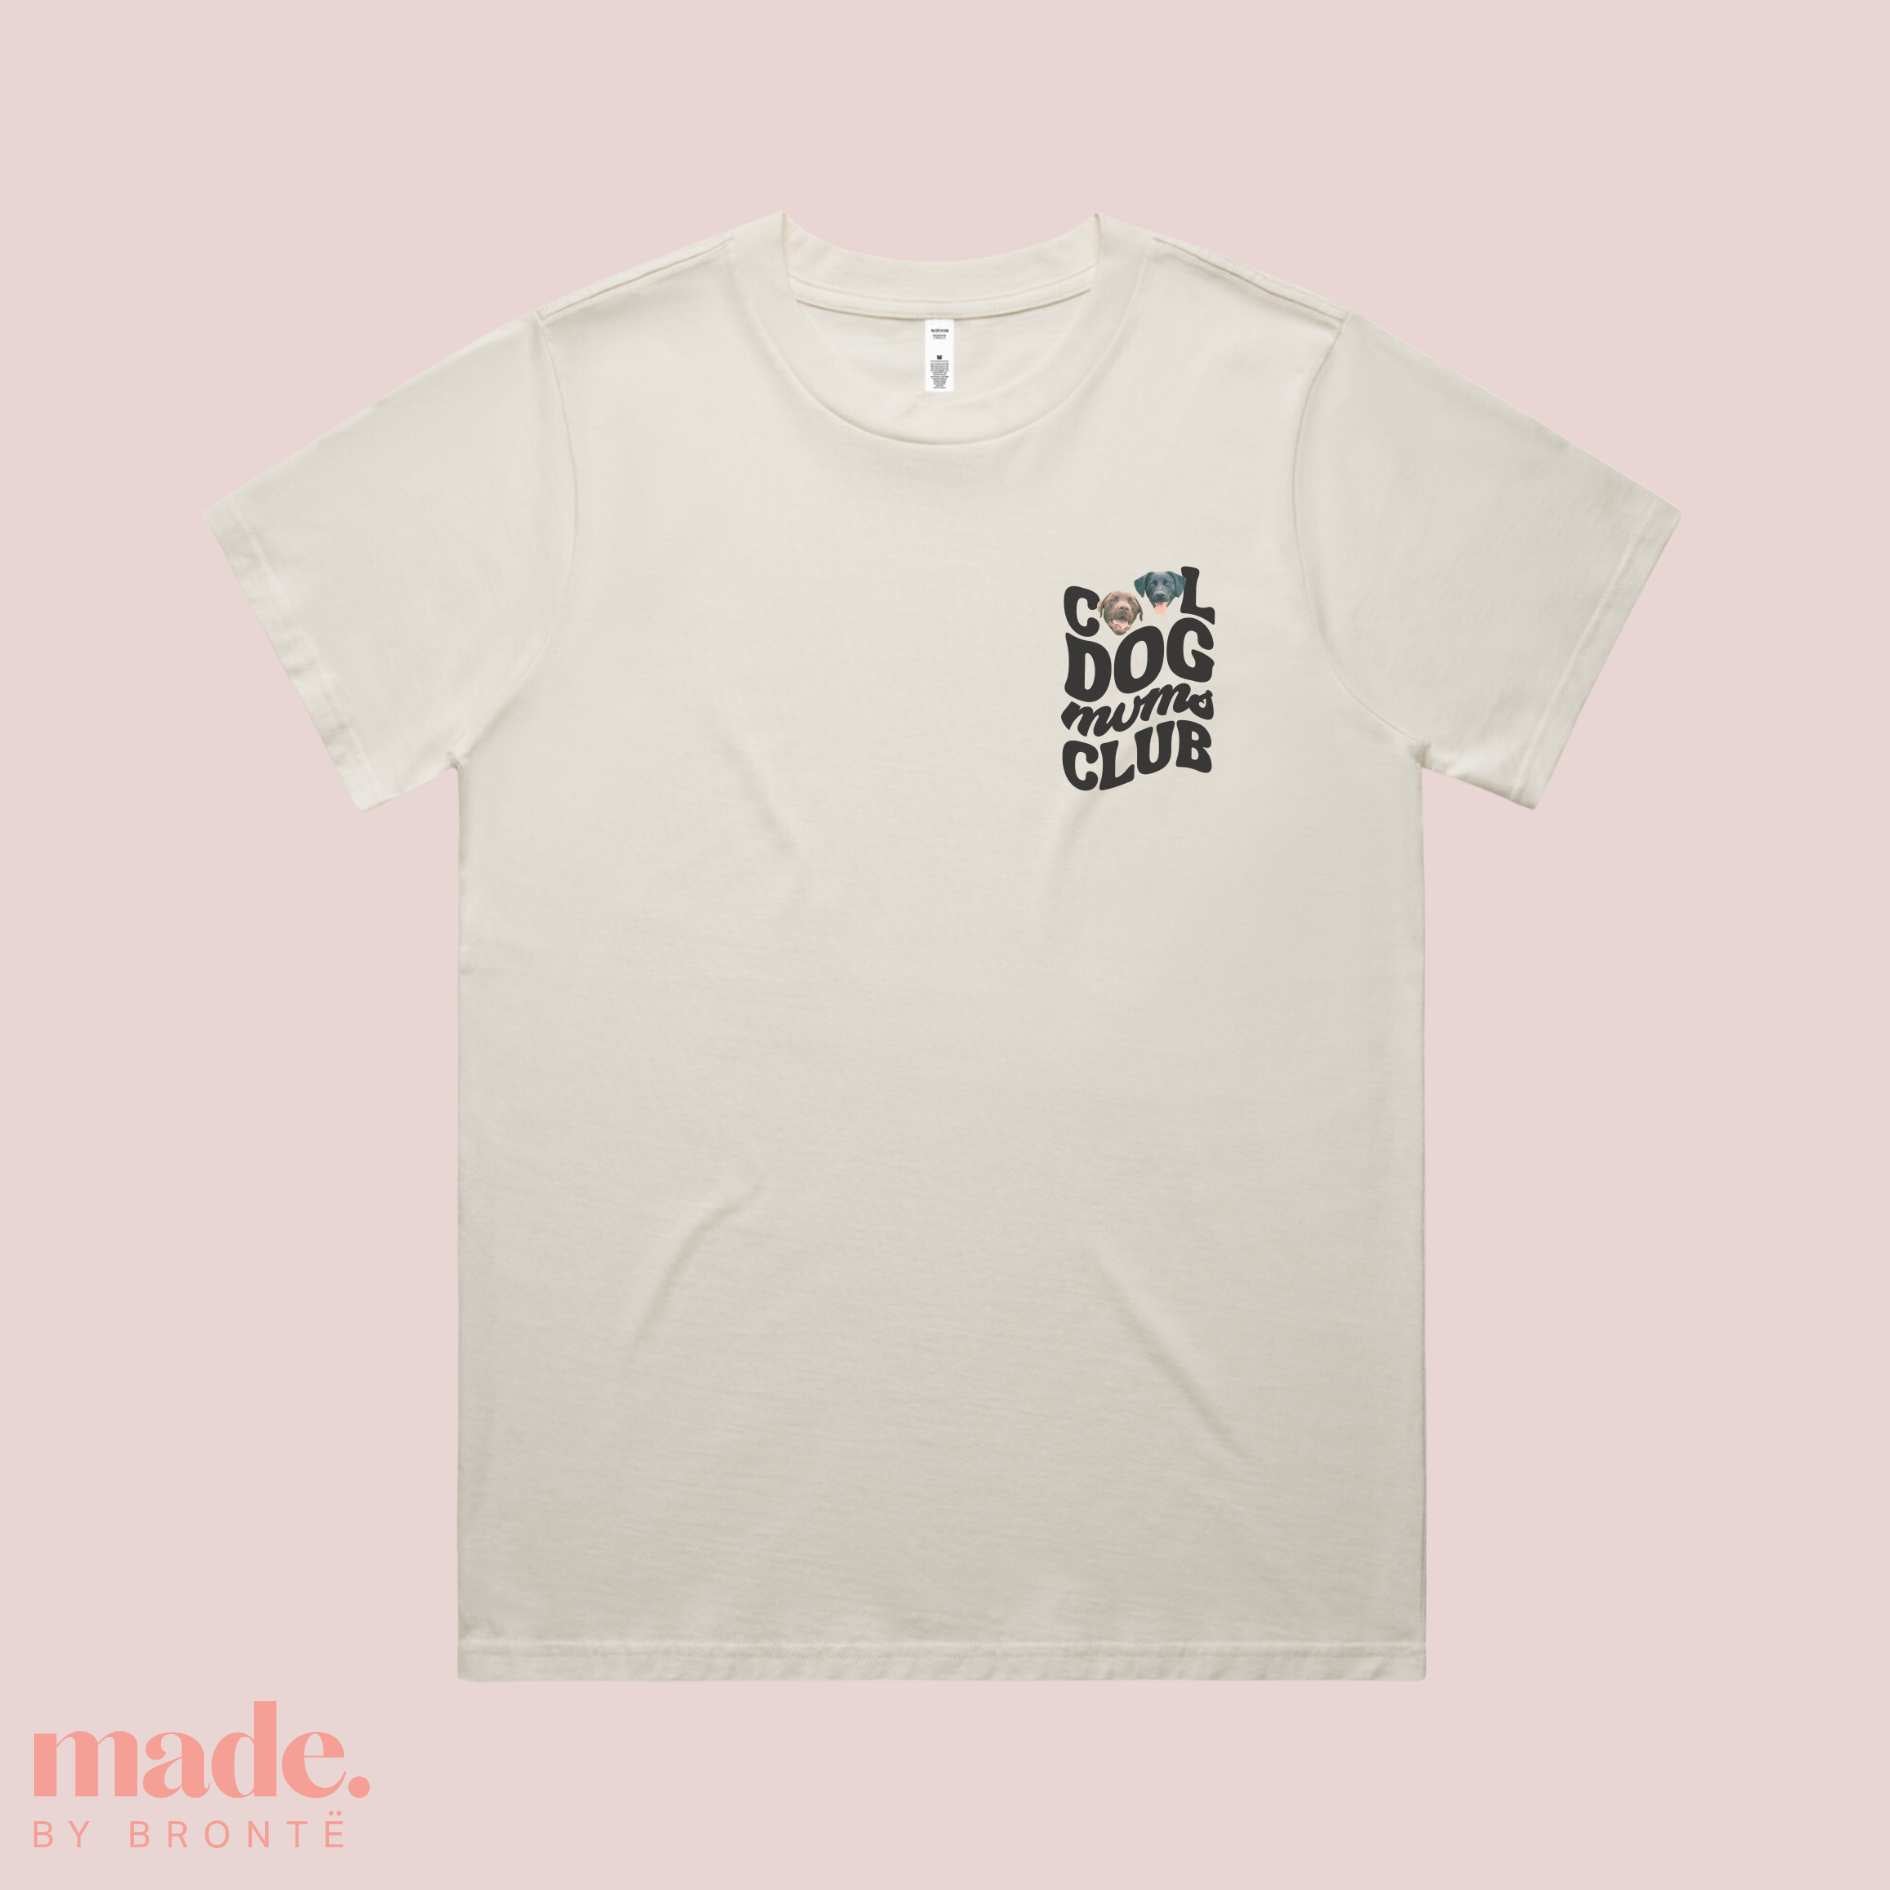 Cool Dog mums Club Tshirt. Tshirt for dog mums, custom dog mum tshirt